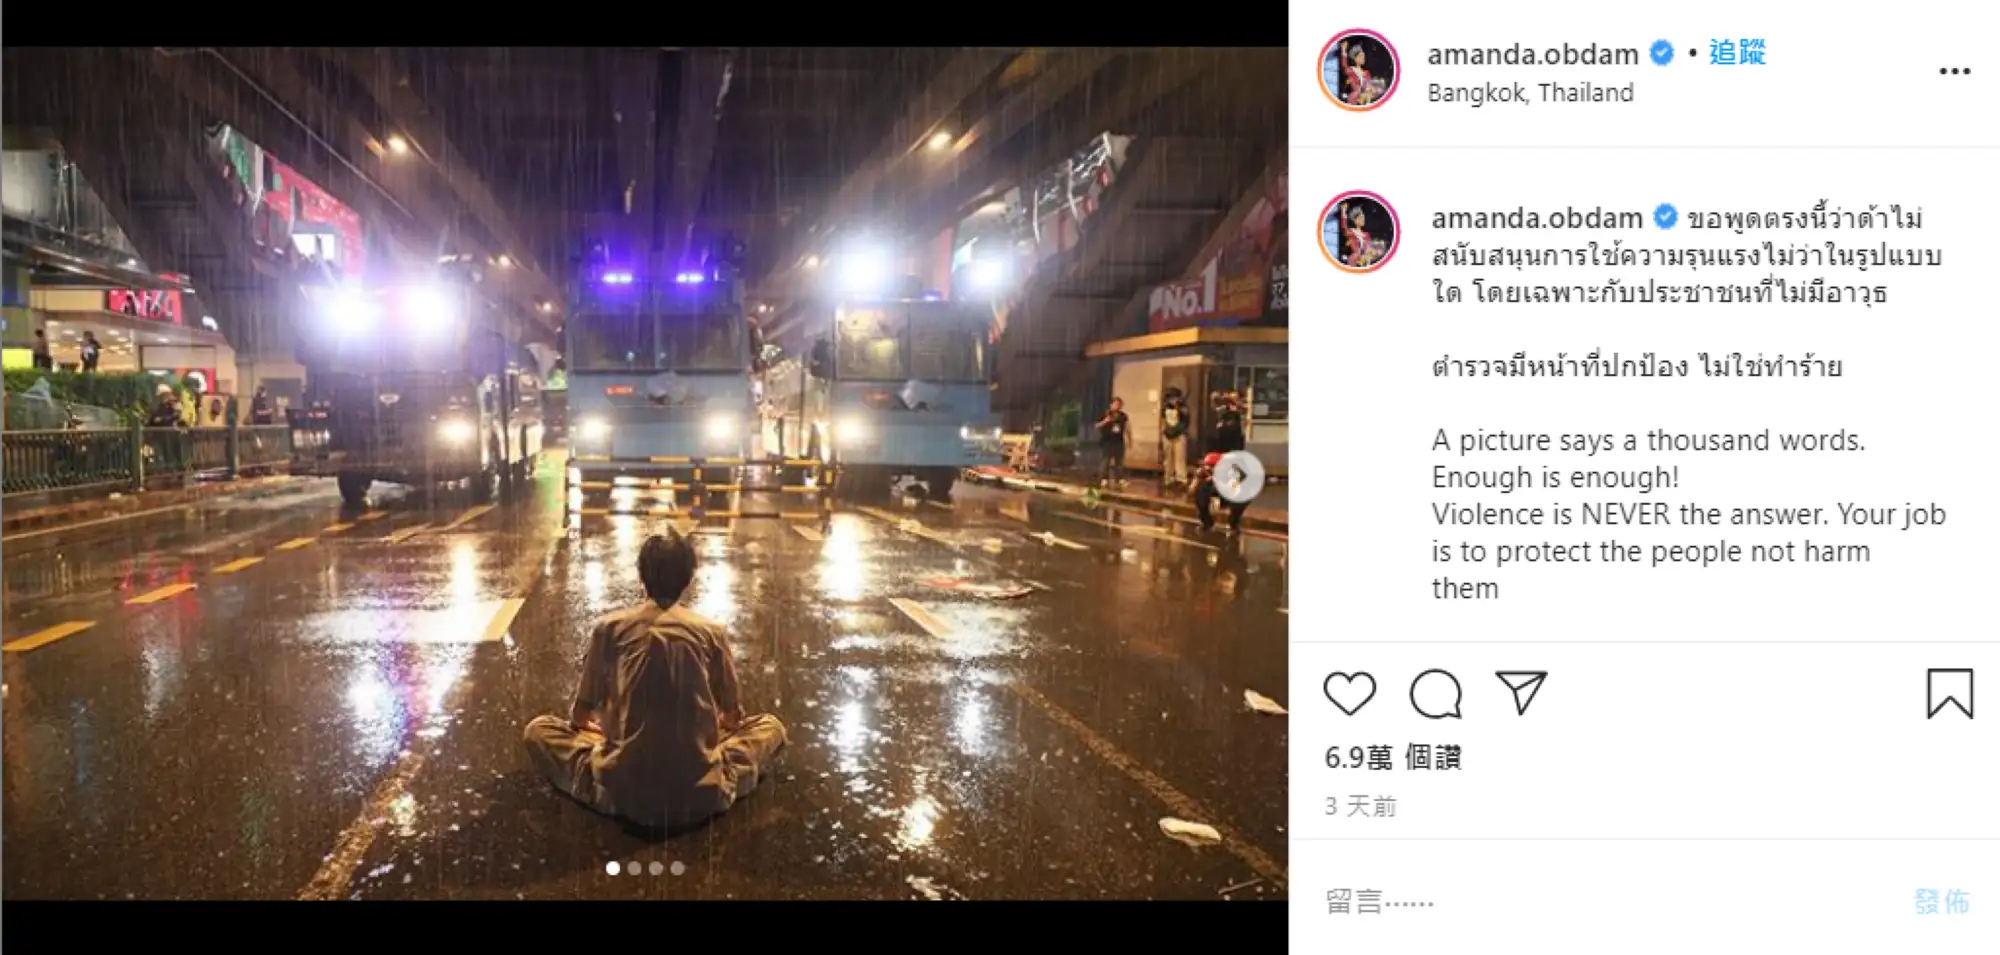 剛奪下泰國環球小姐(Miss Universe Thailand)后冠的Amanda Obdam)也在Instagram上聲援示威抗議者（圖片來源：Instagram）